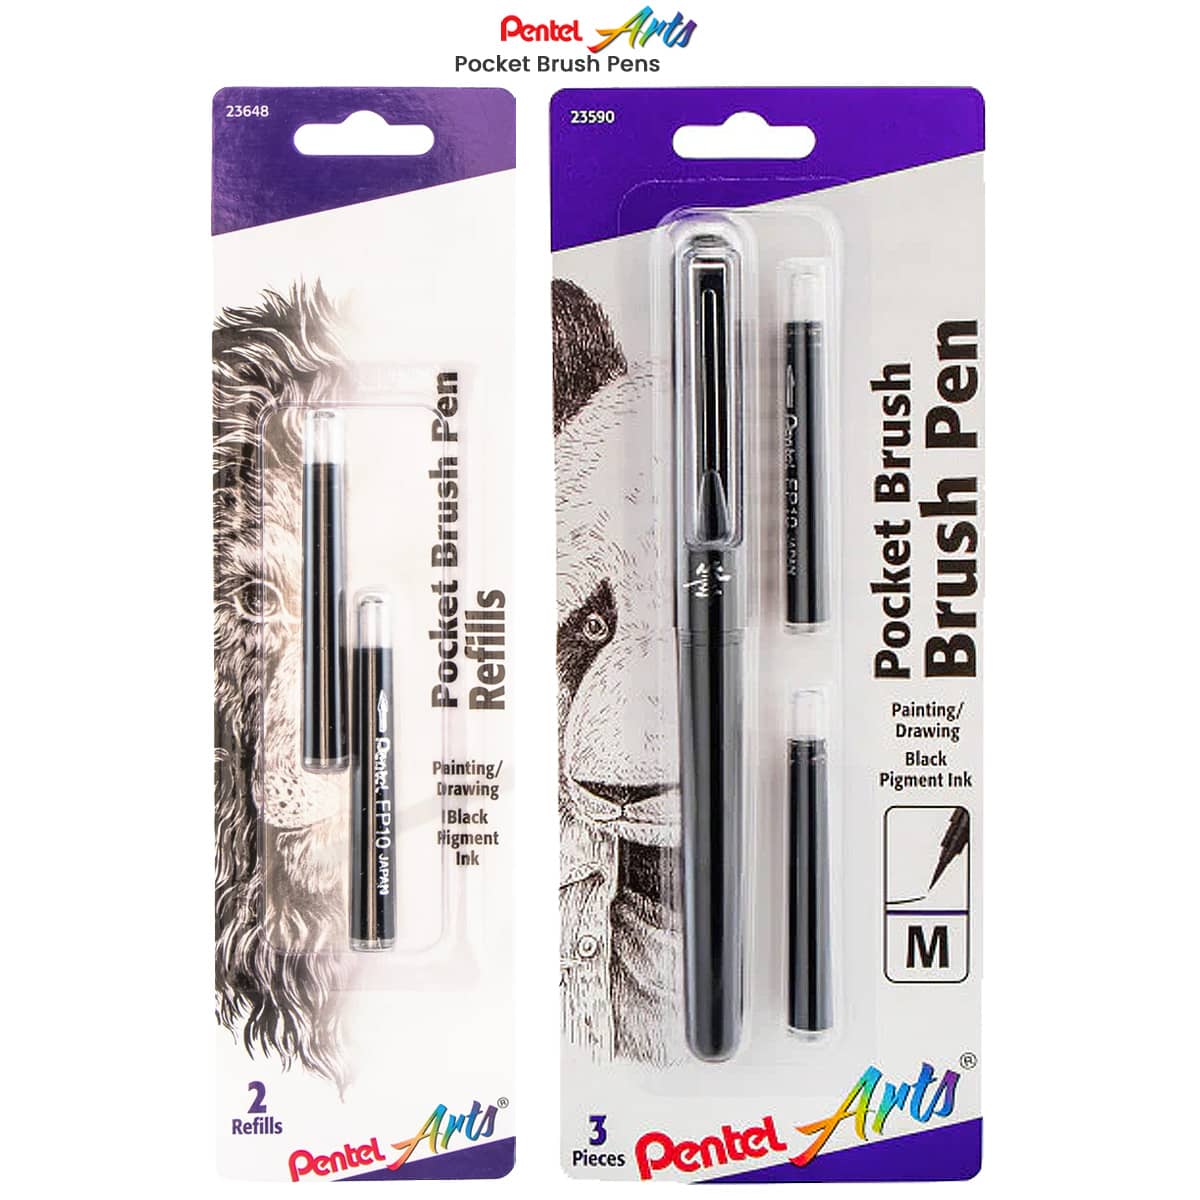 https://www.jerrysartarama.com/media/catalog/product/p/e/pentel-pocket-brush-pens-main.jpg